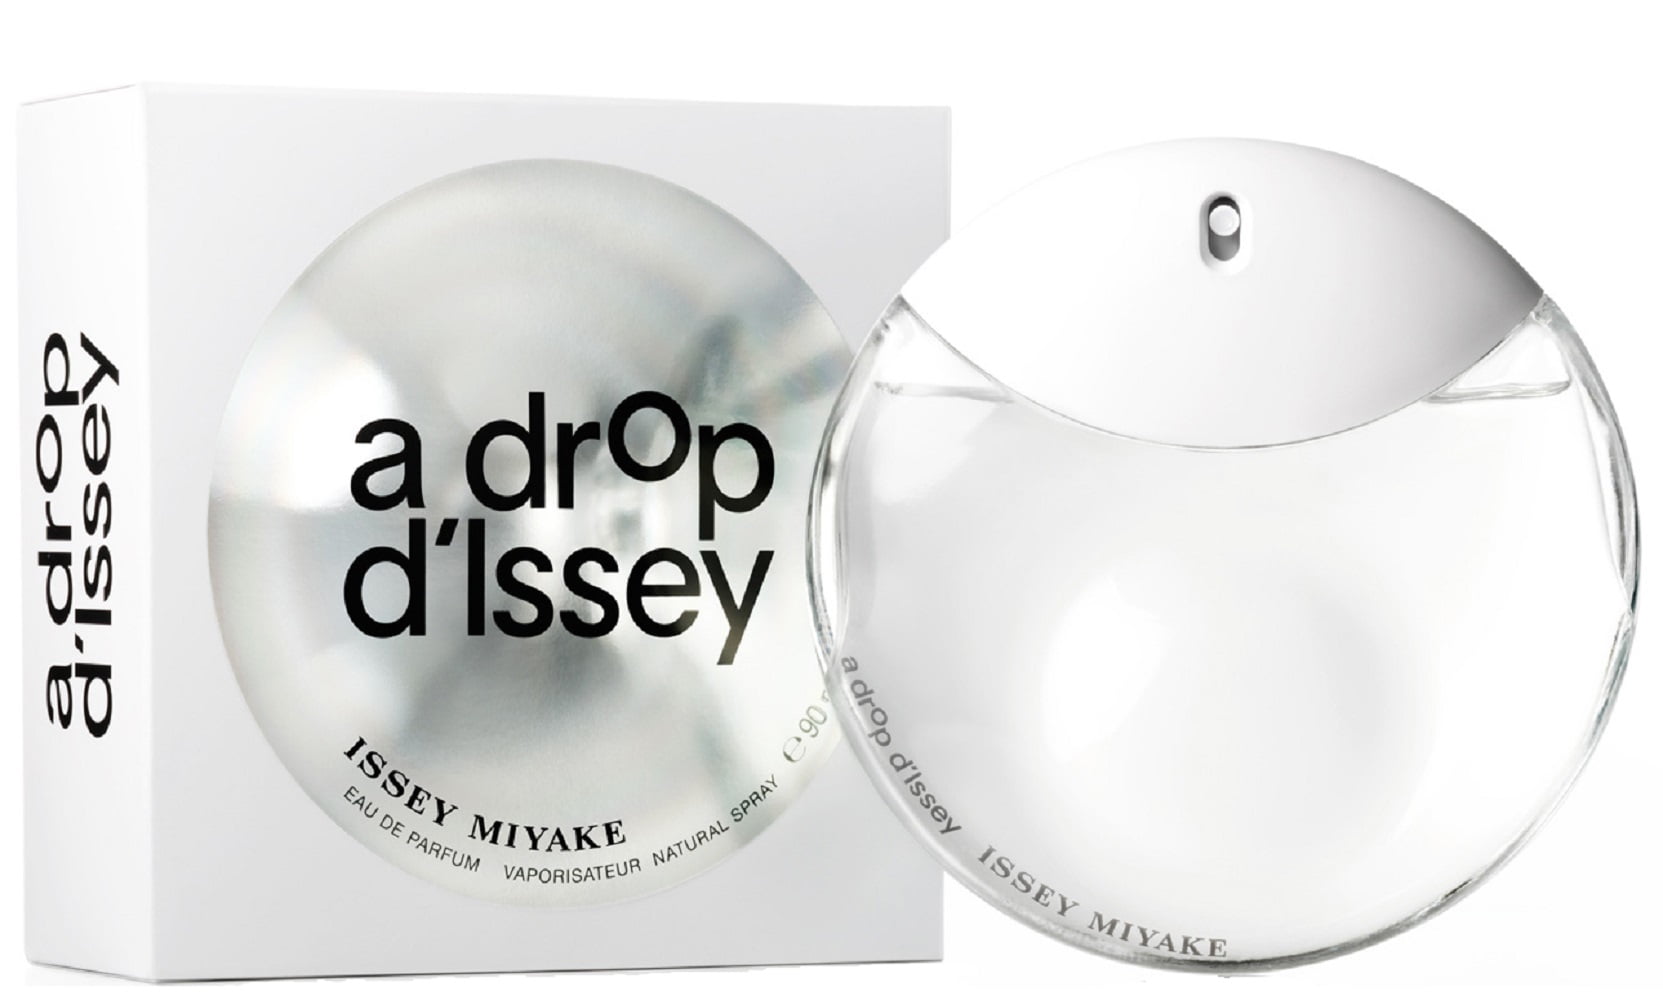 A DROP D' ISSEY * Issey Miyake 3.0 oz / 90 ml Eau de Parfum Women ...